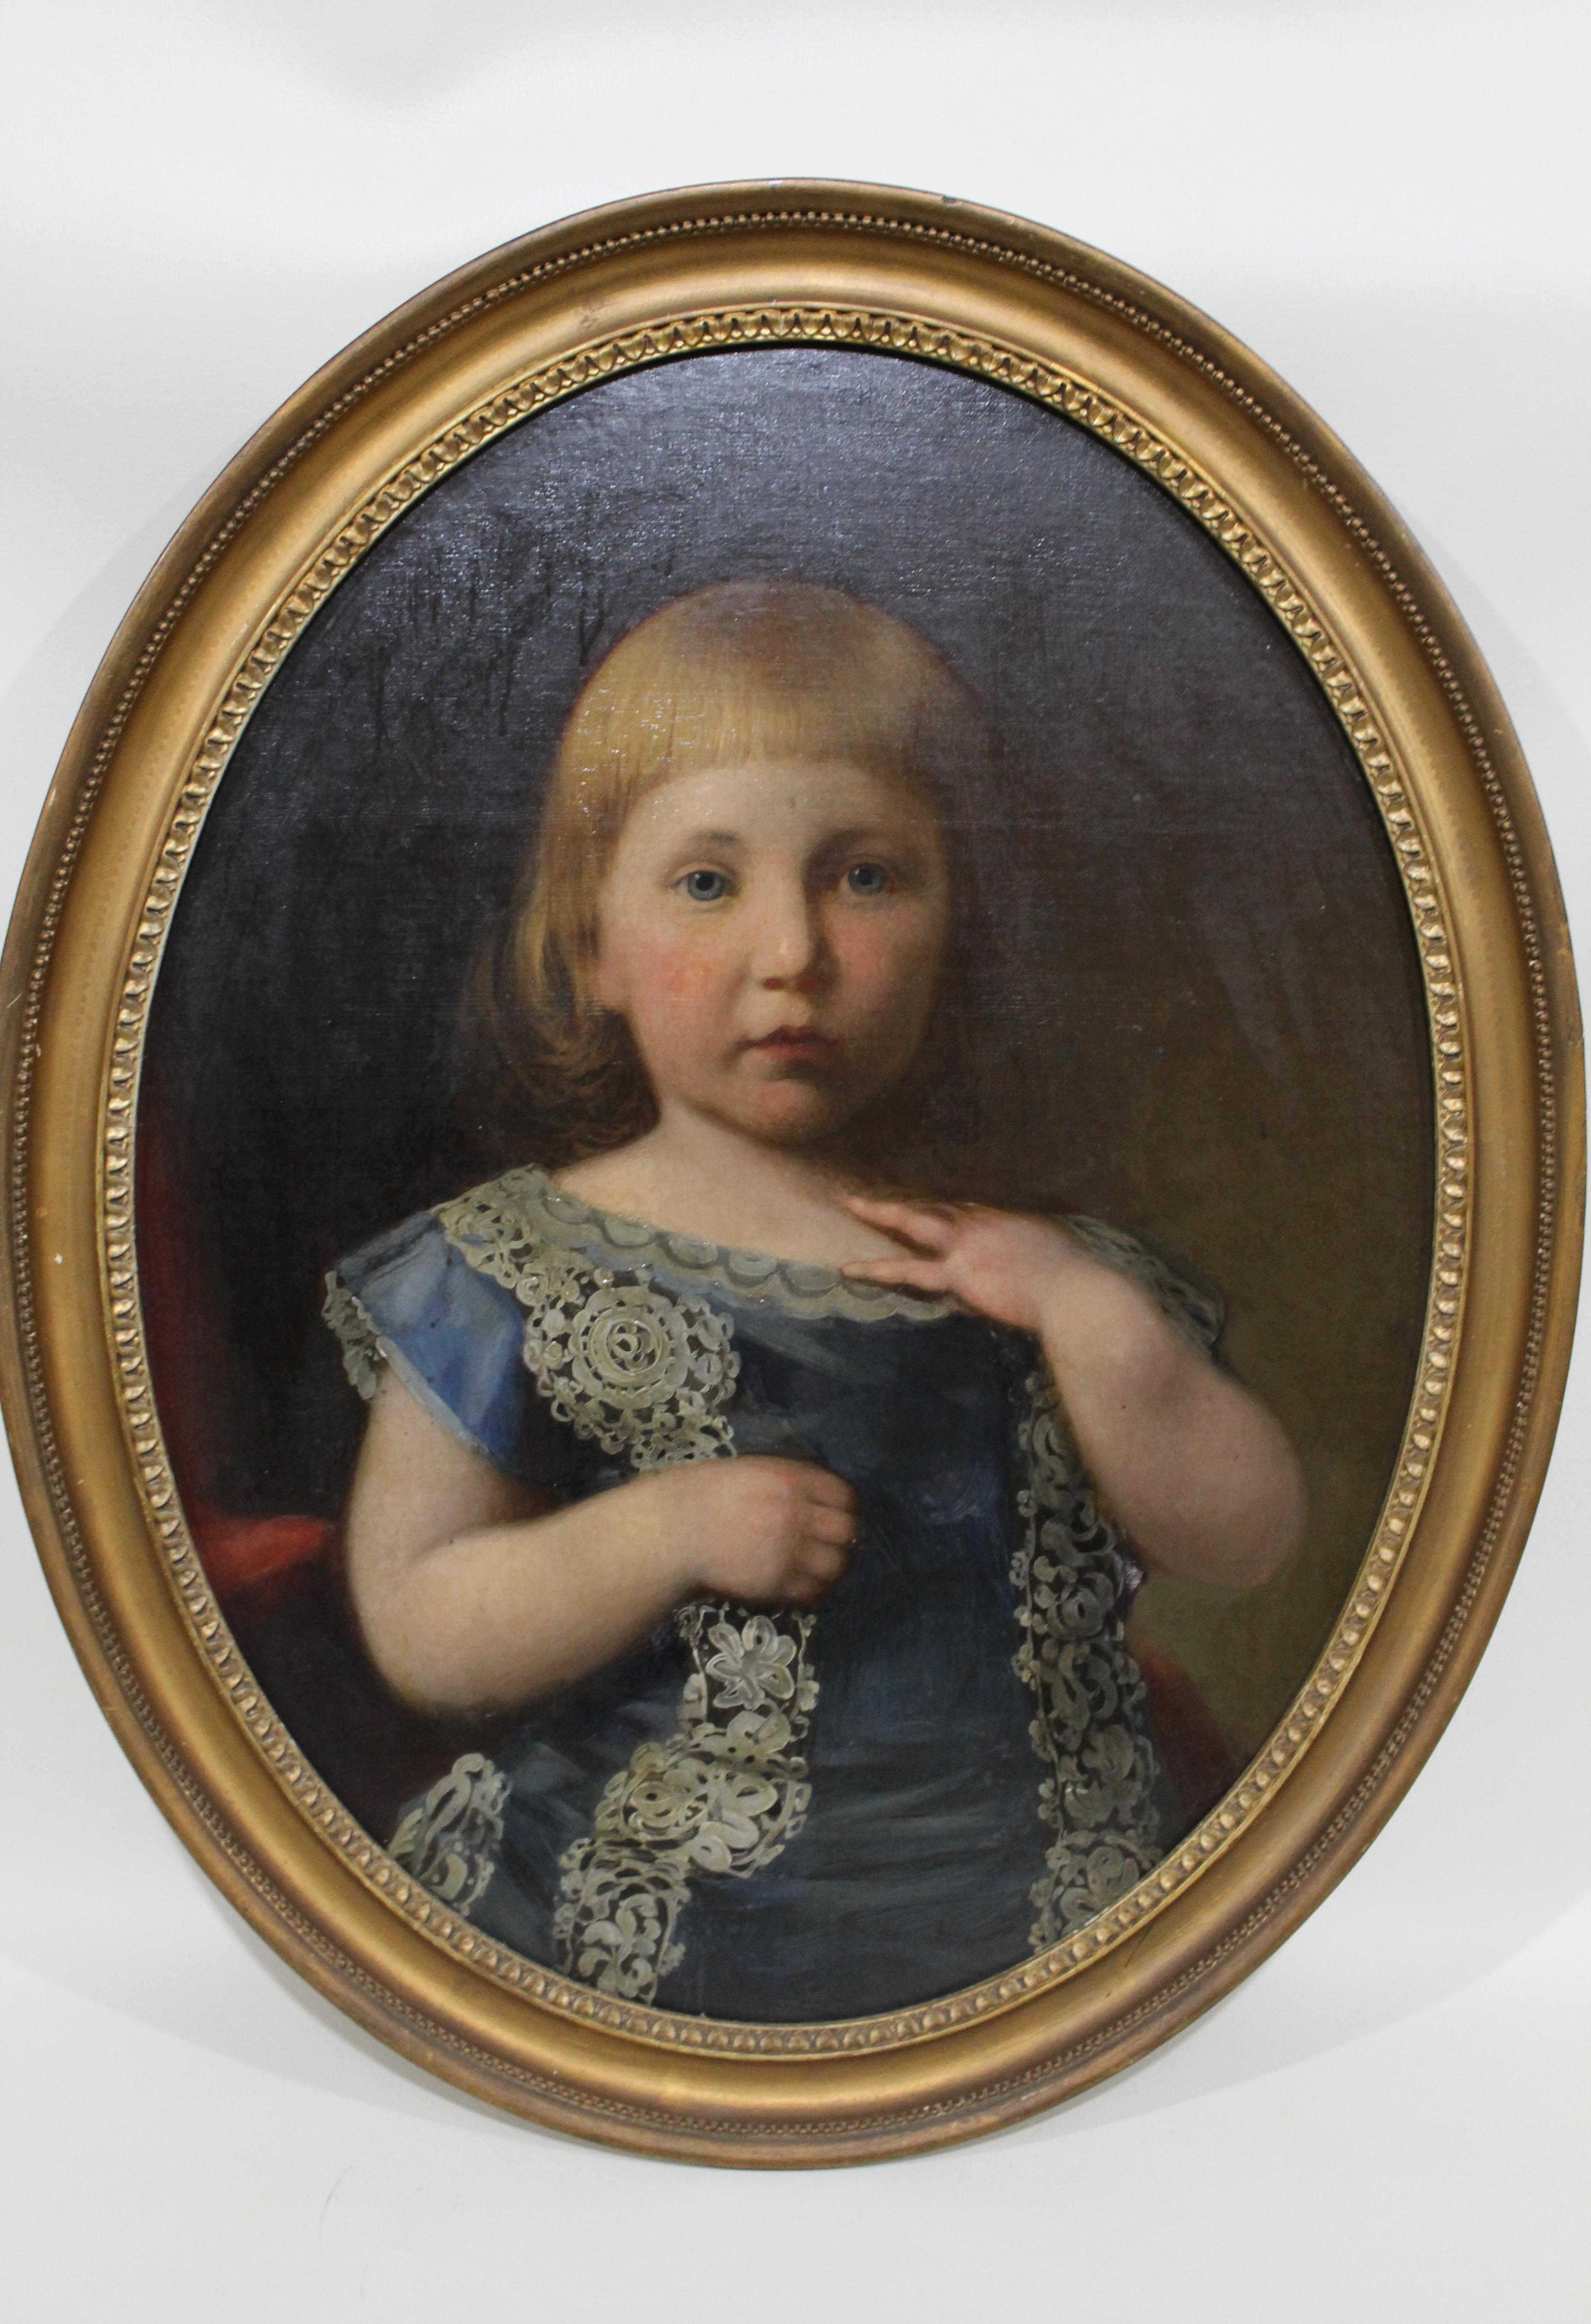 antique portrait